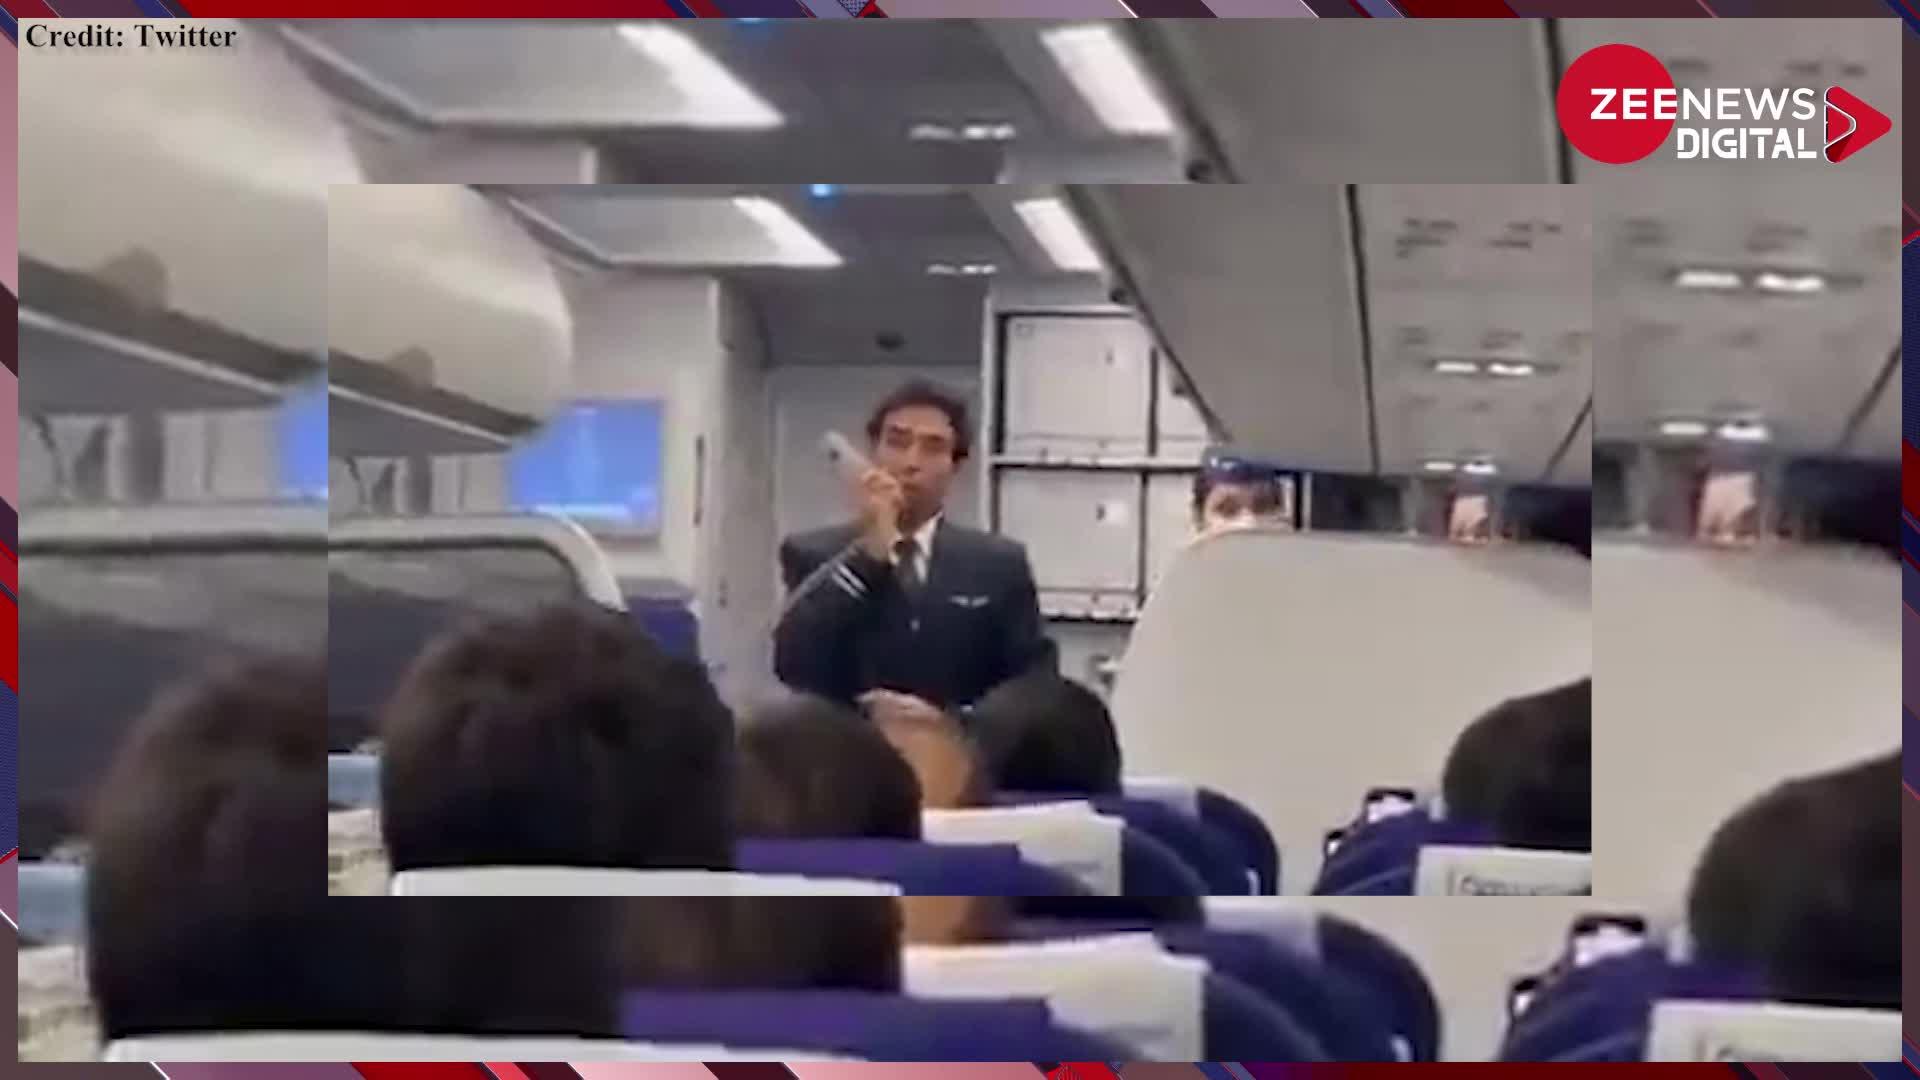 Flight Video: 'खोलिए सर बीयर' कहकर फ्लाइट में यात्री ने पायलट से पूछा ऐसा सवाल, सुनकर दंग रह जाएंगे आप, देखें वायरल वीडियो